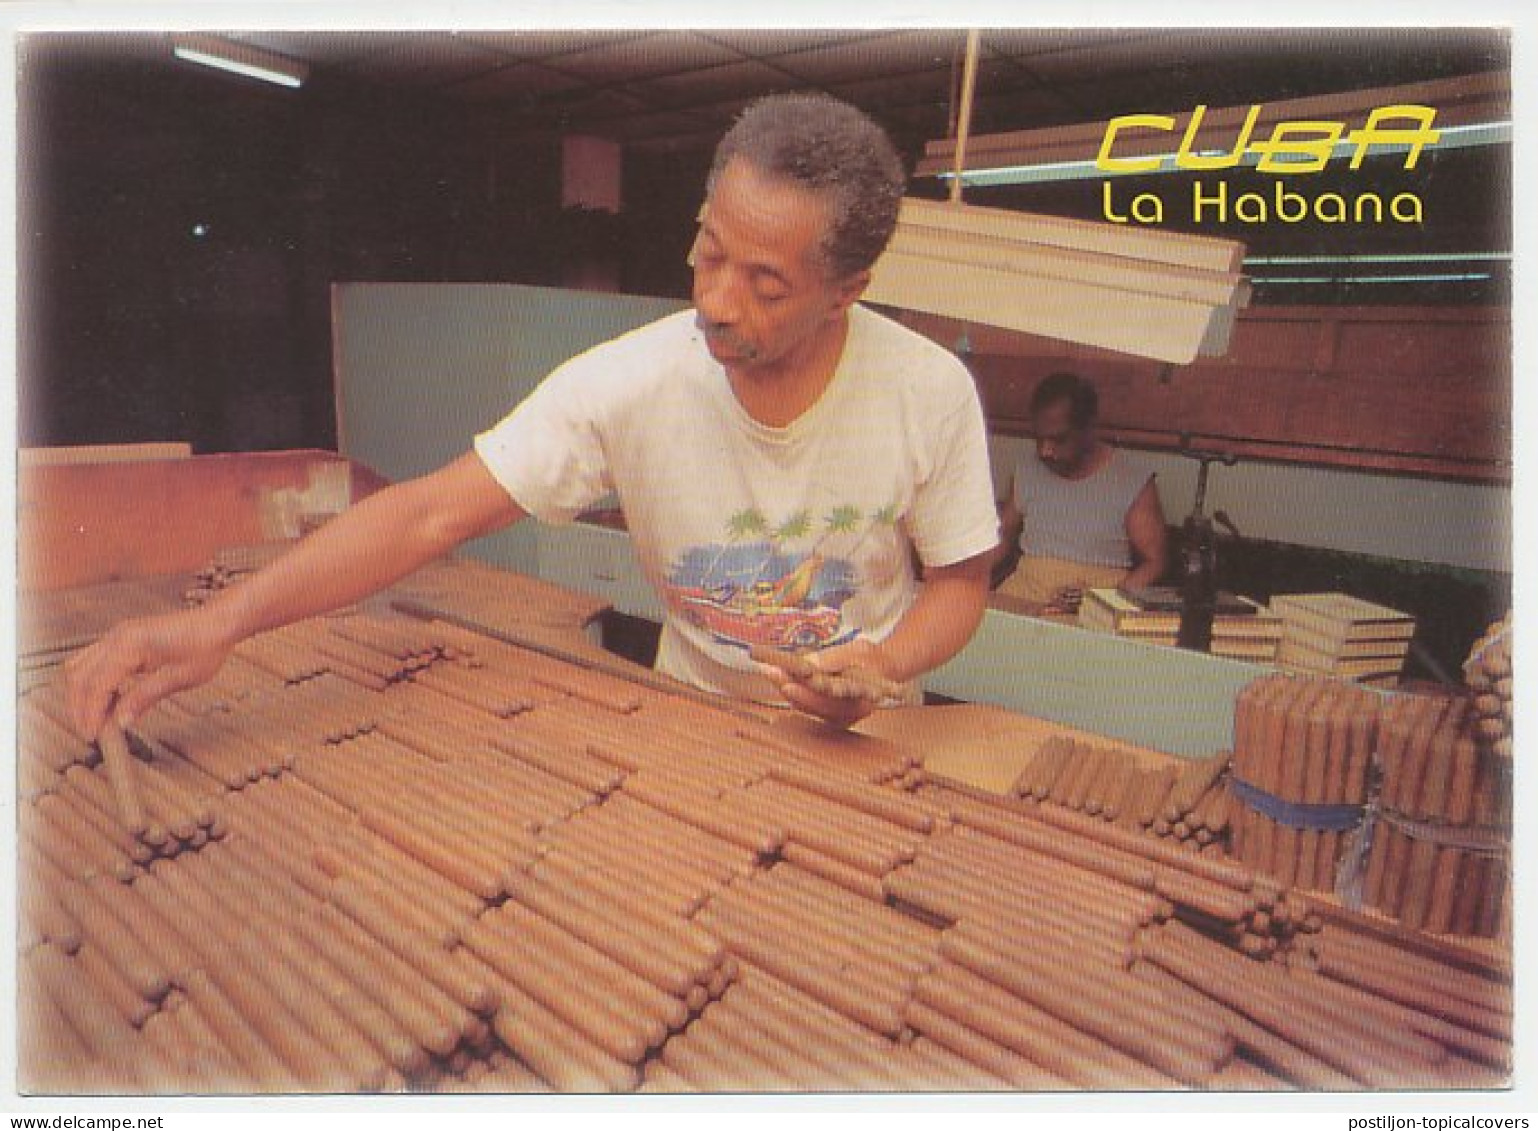 Postal Stationery Cuba 2000 Cigar - Tobacco